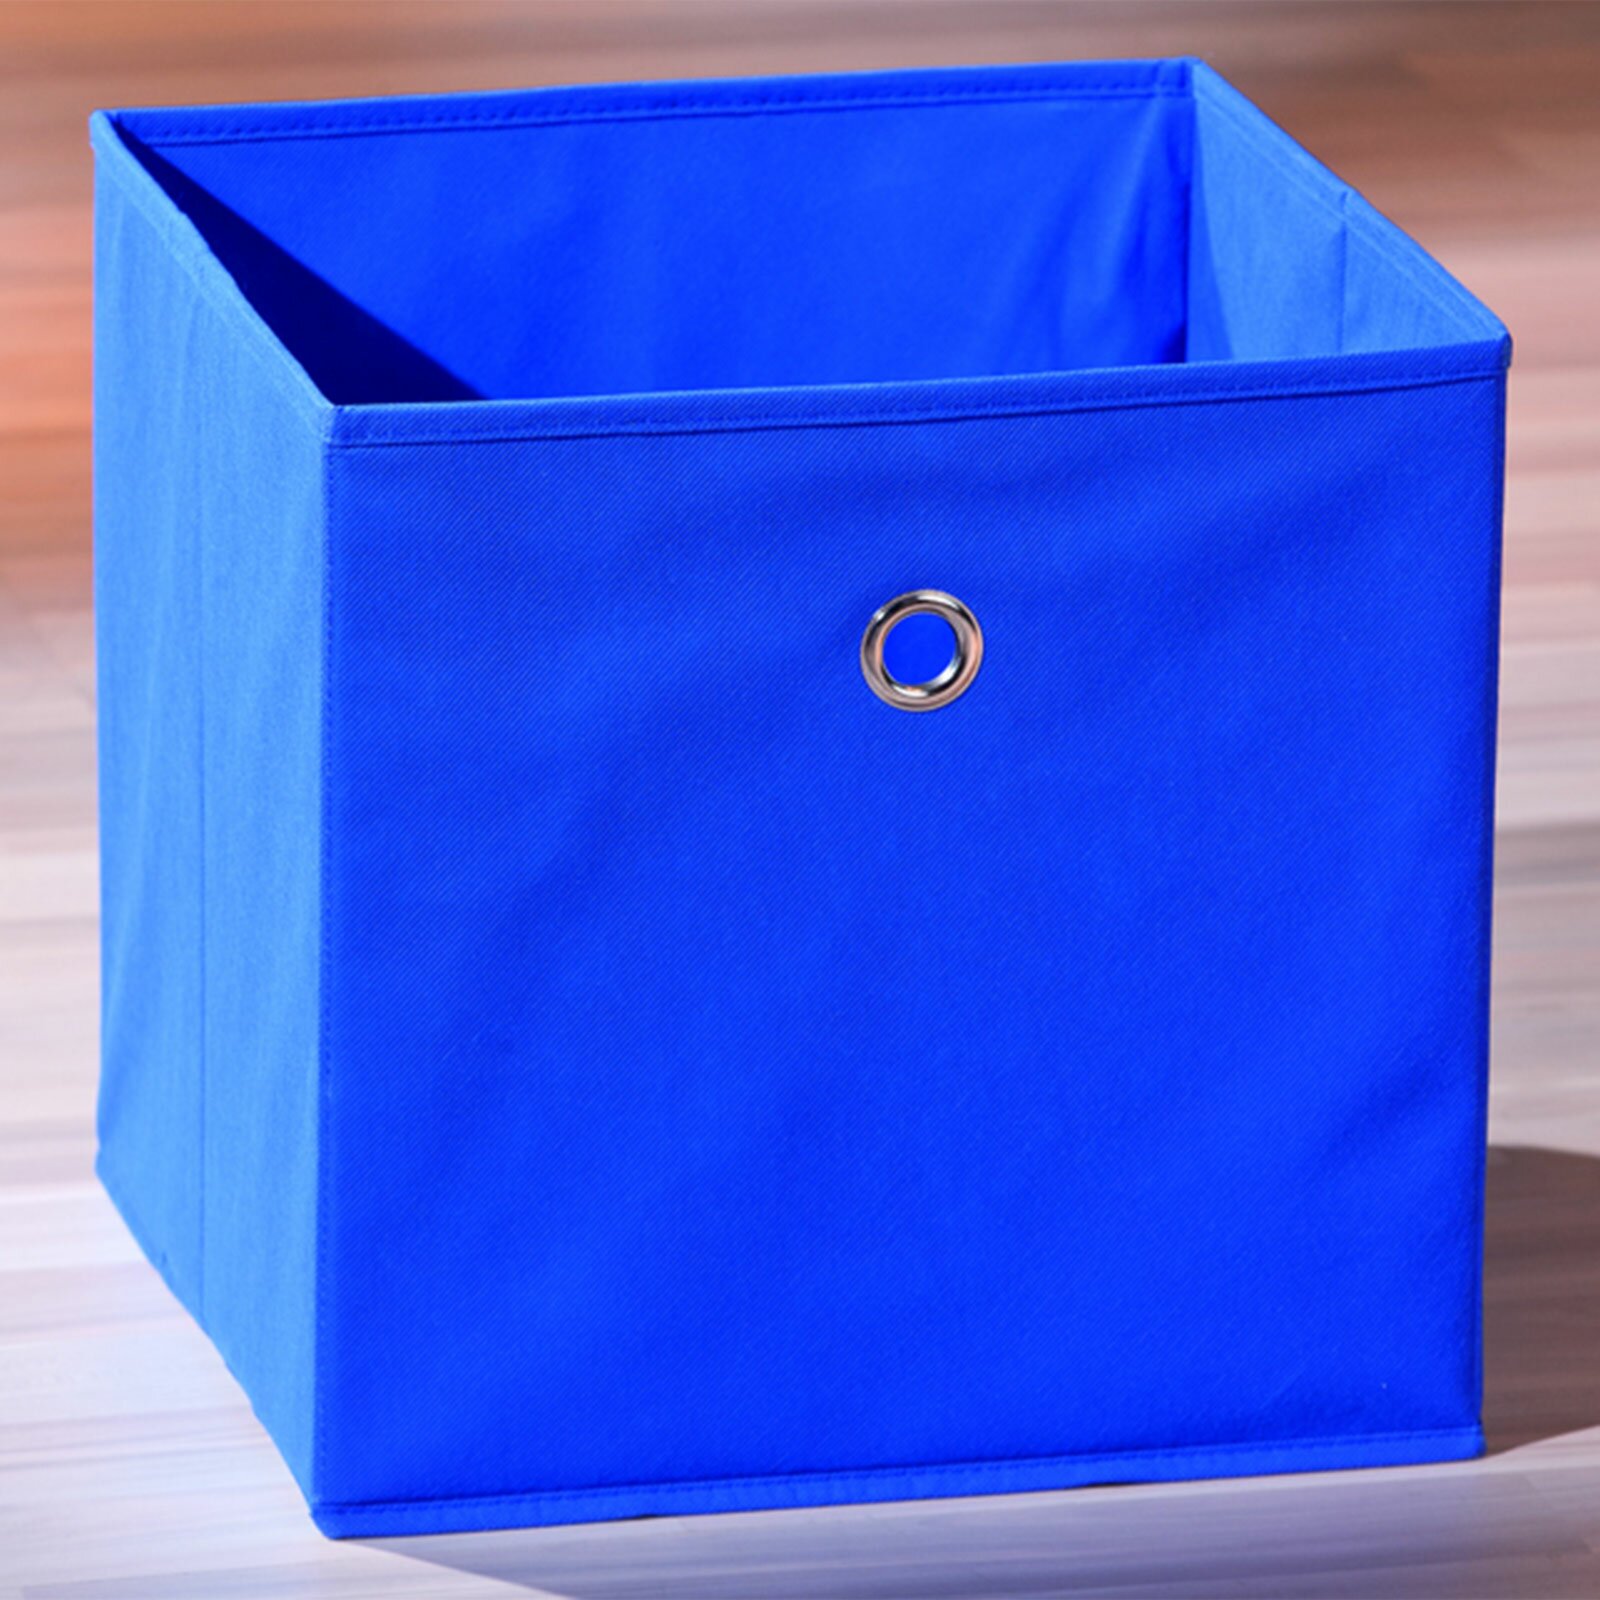 Faltbox WINNY - blau - mit Metallöse - 32x32 cm